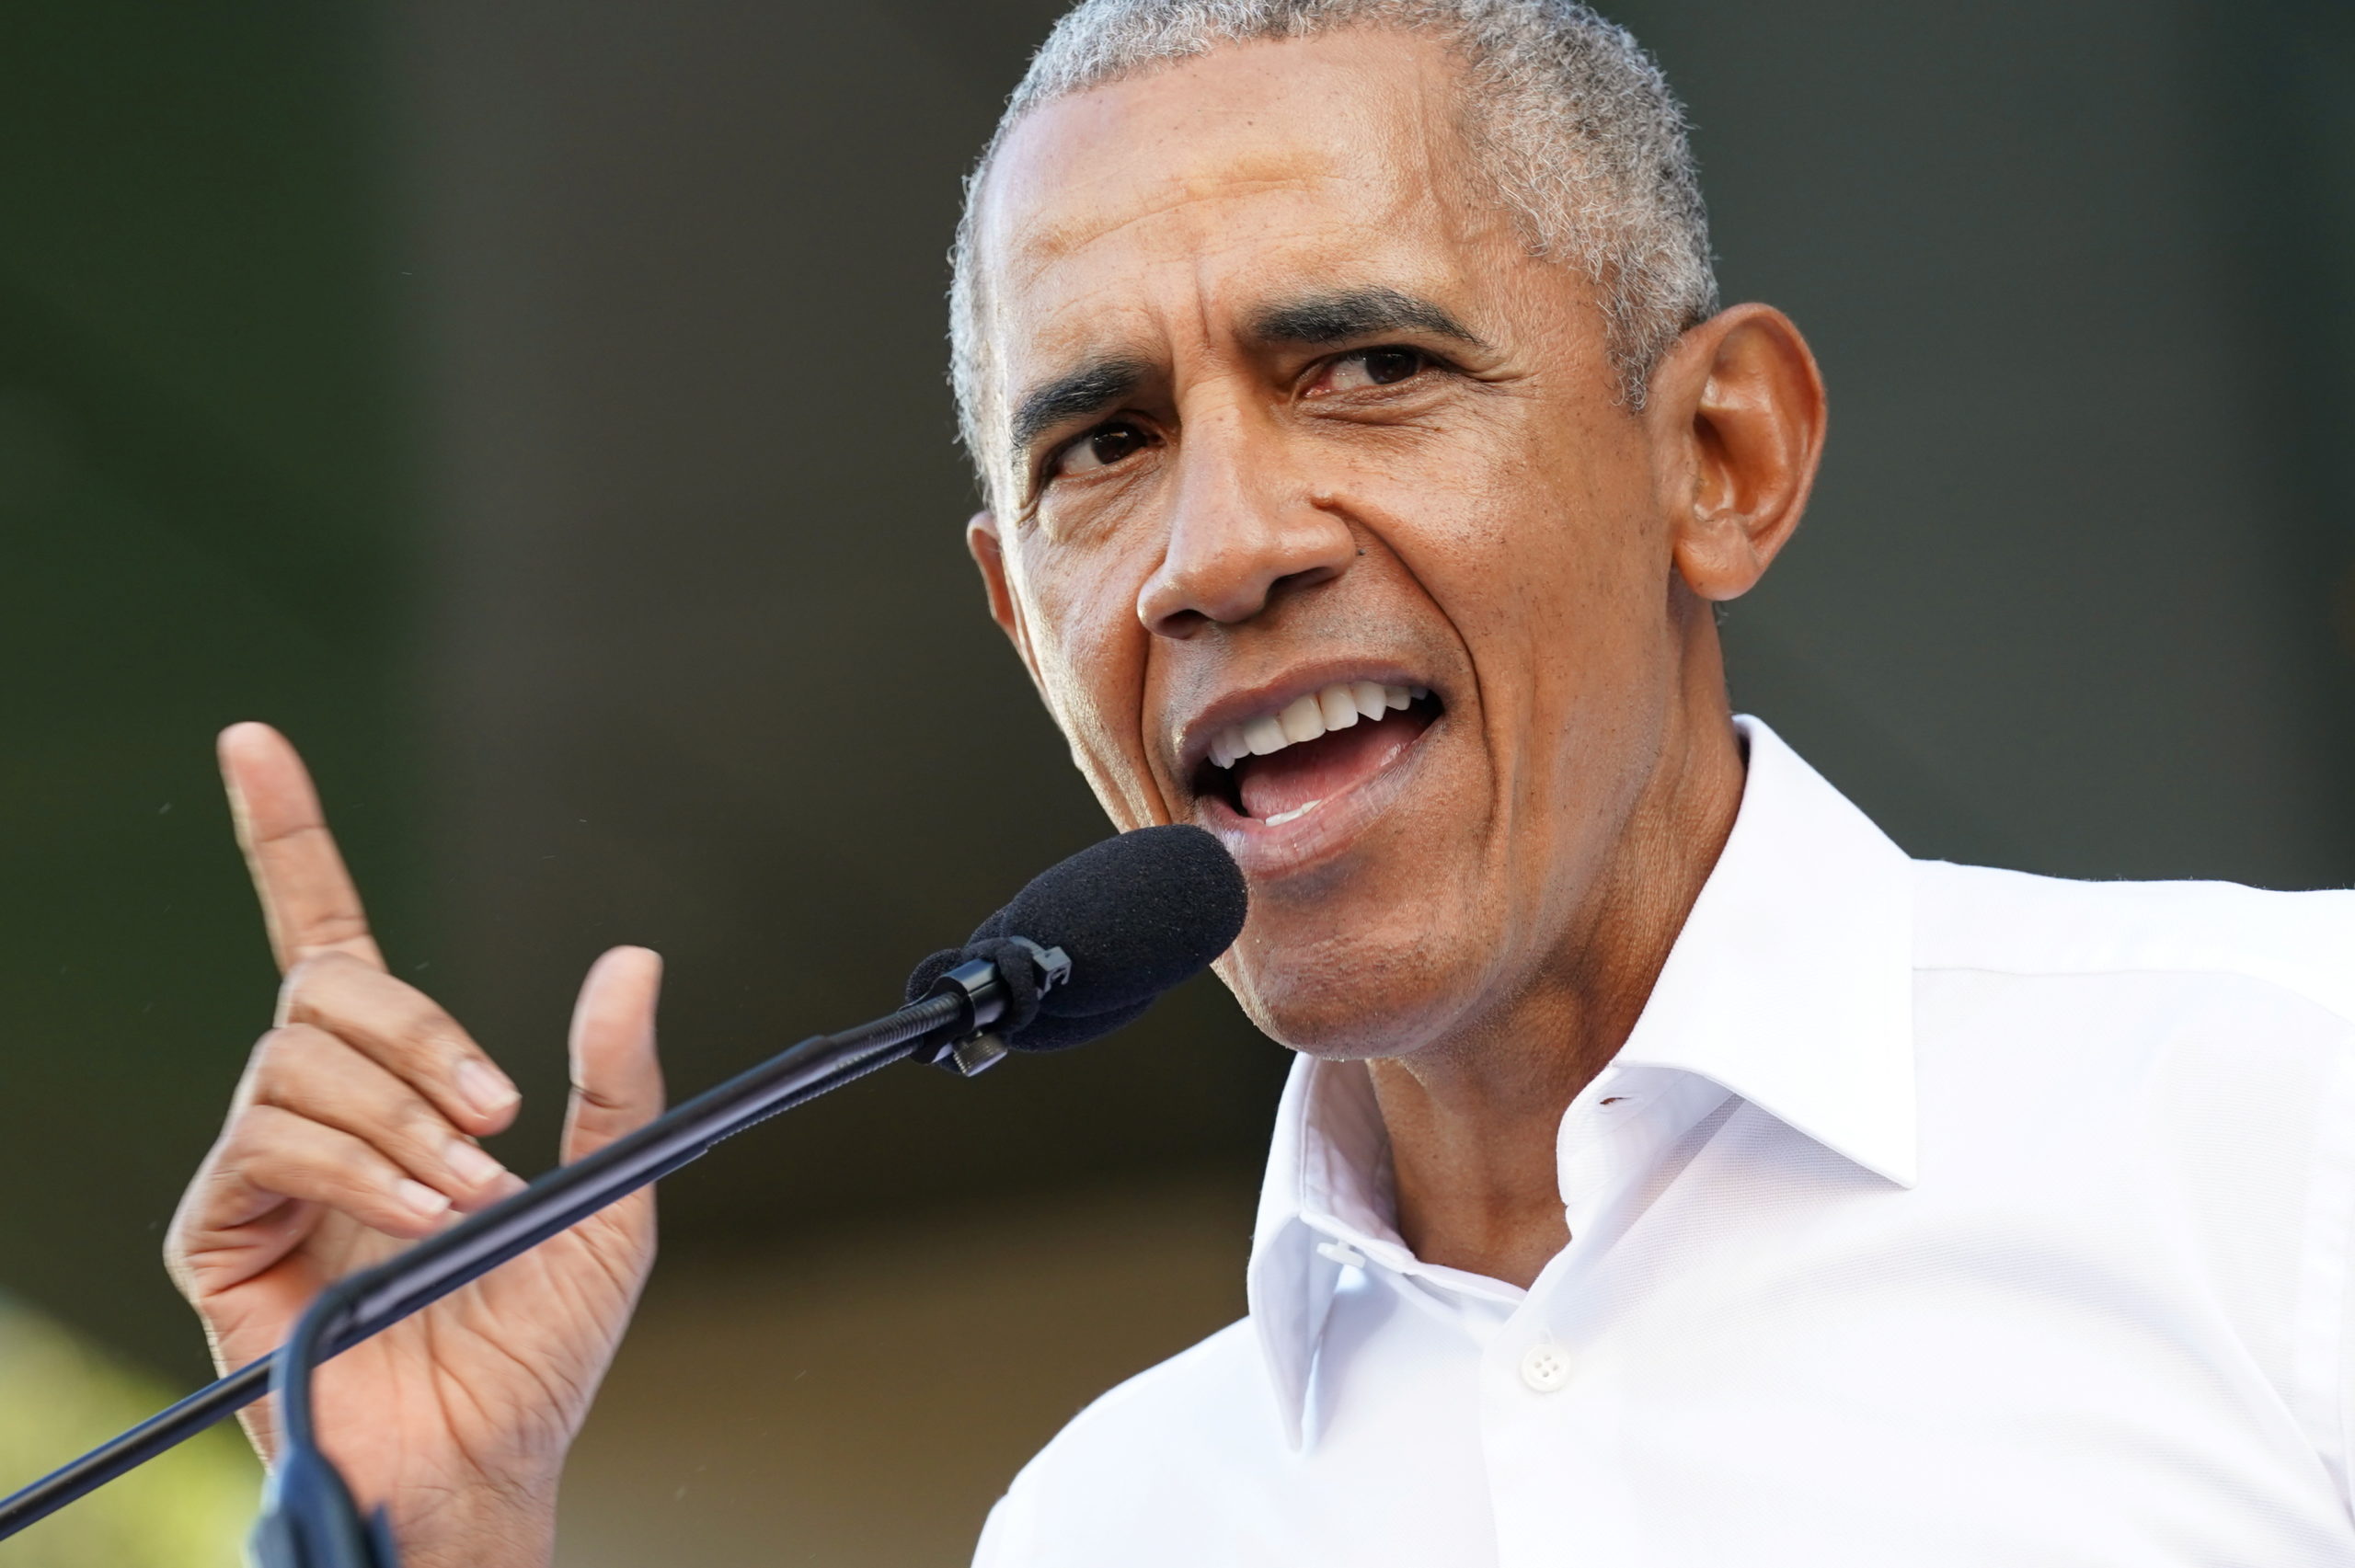 Obama Has Biden’s Back As He Praises "Landmark" Build Back Better